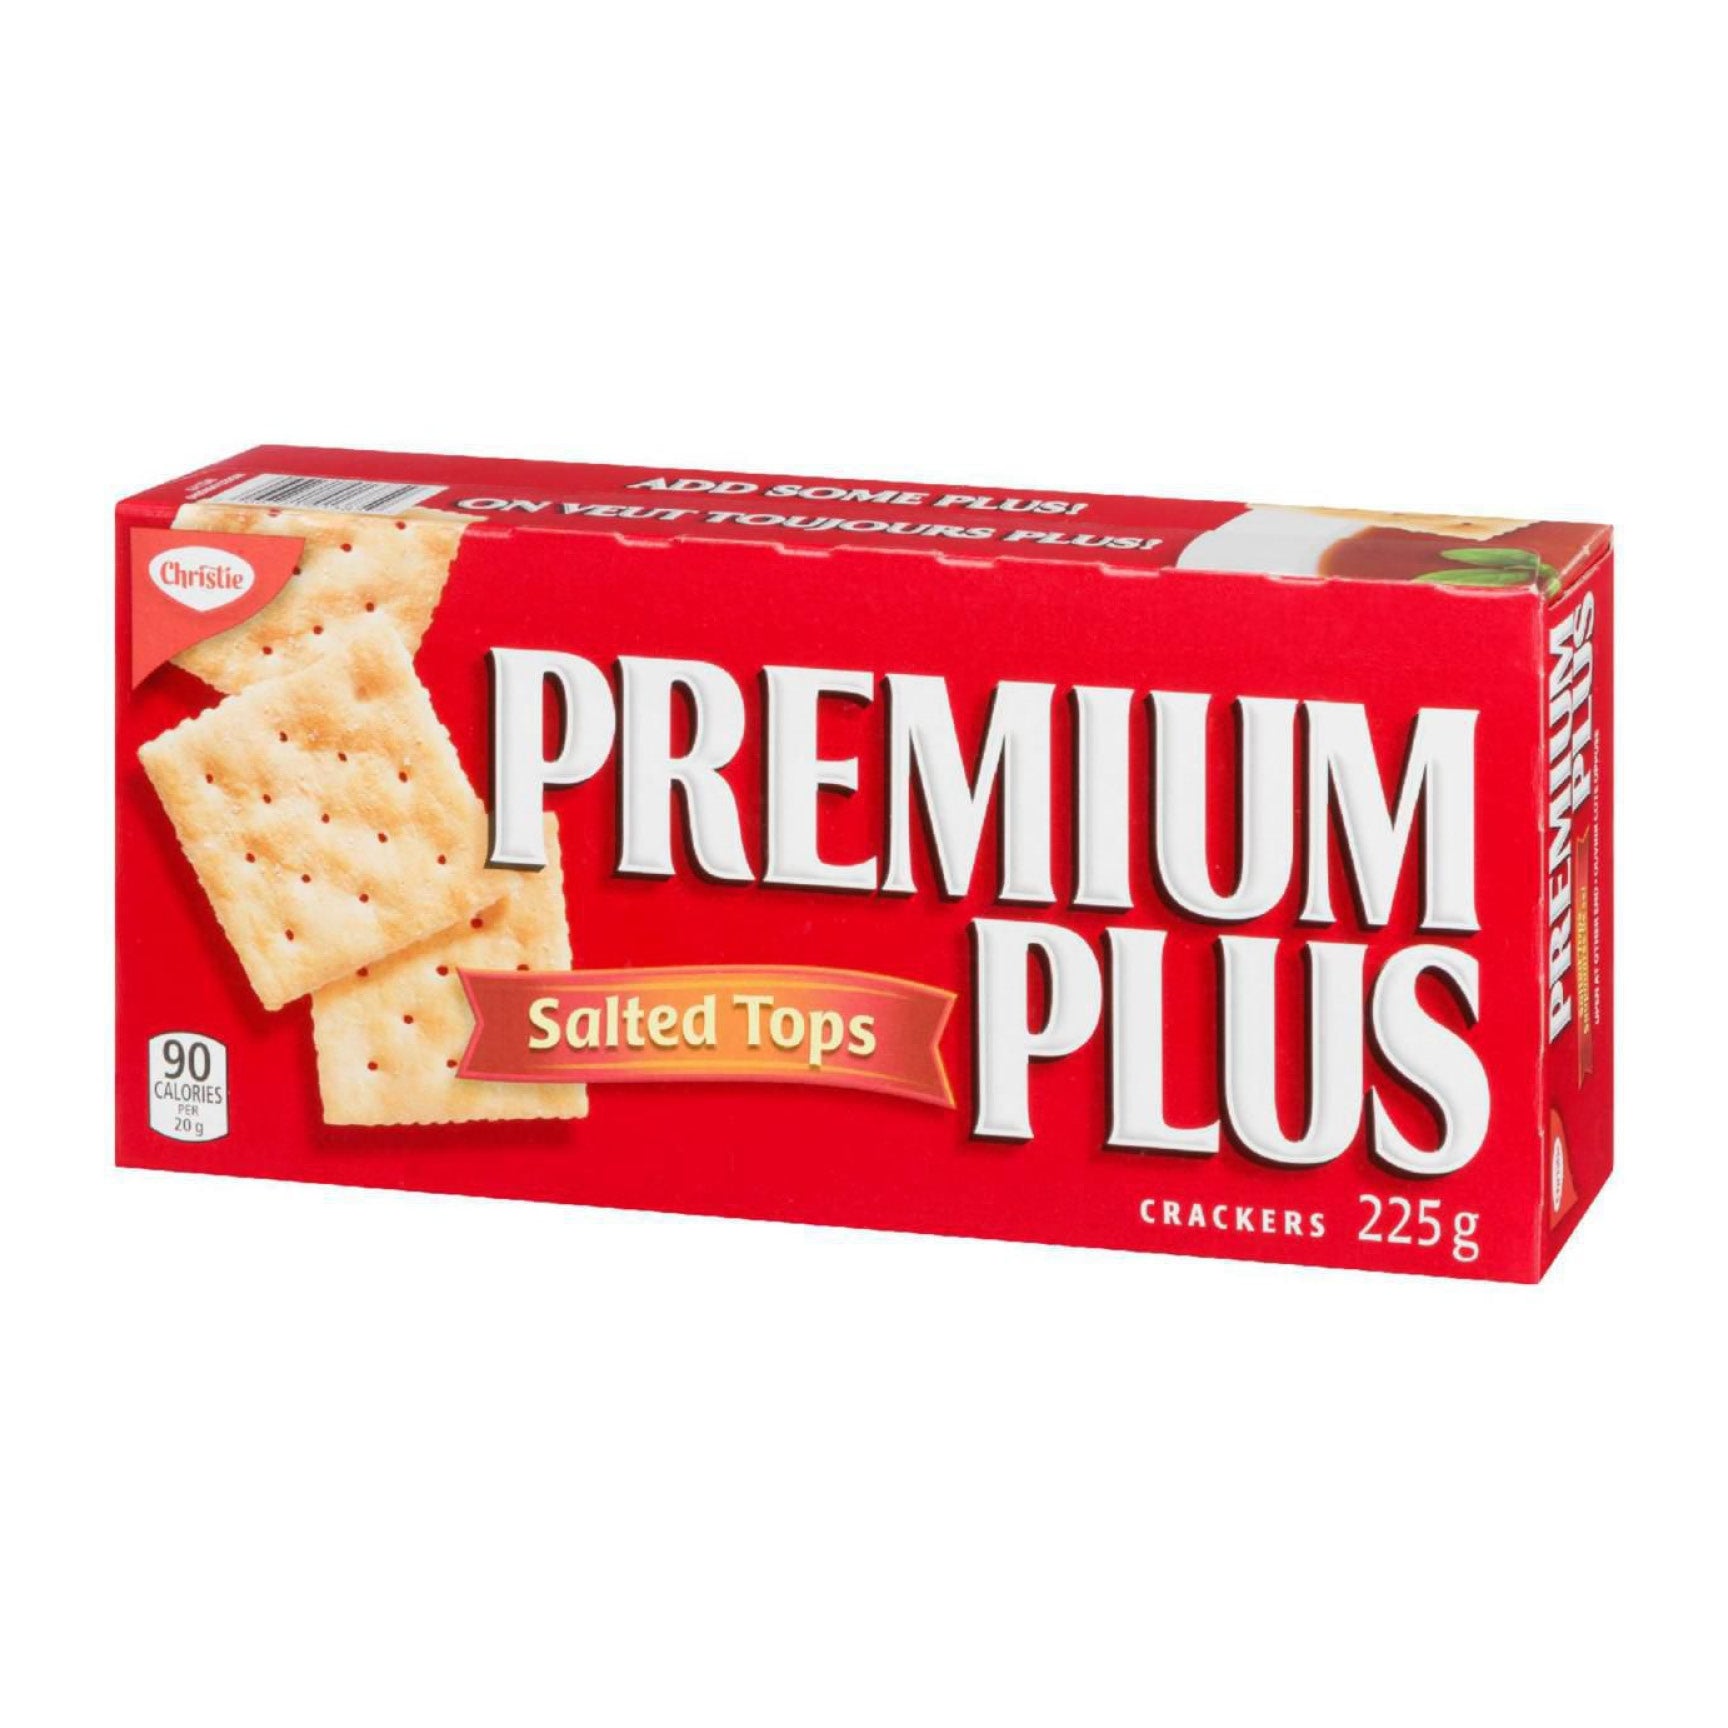 Premium Plus Salted Tops Crackers, 225g